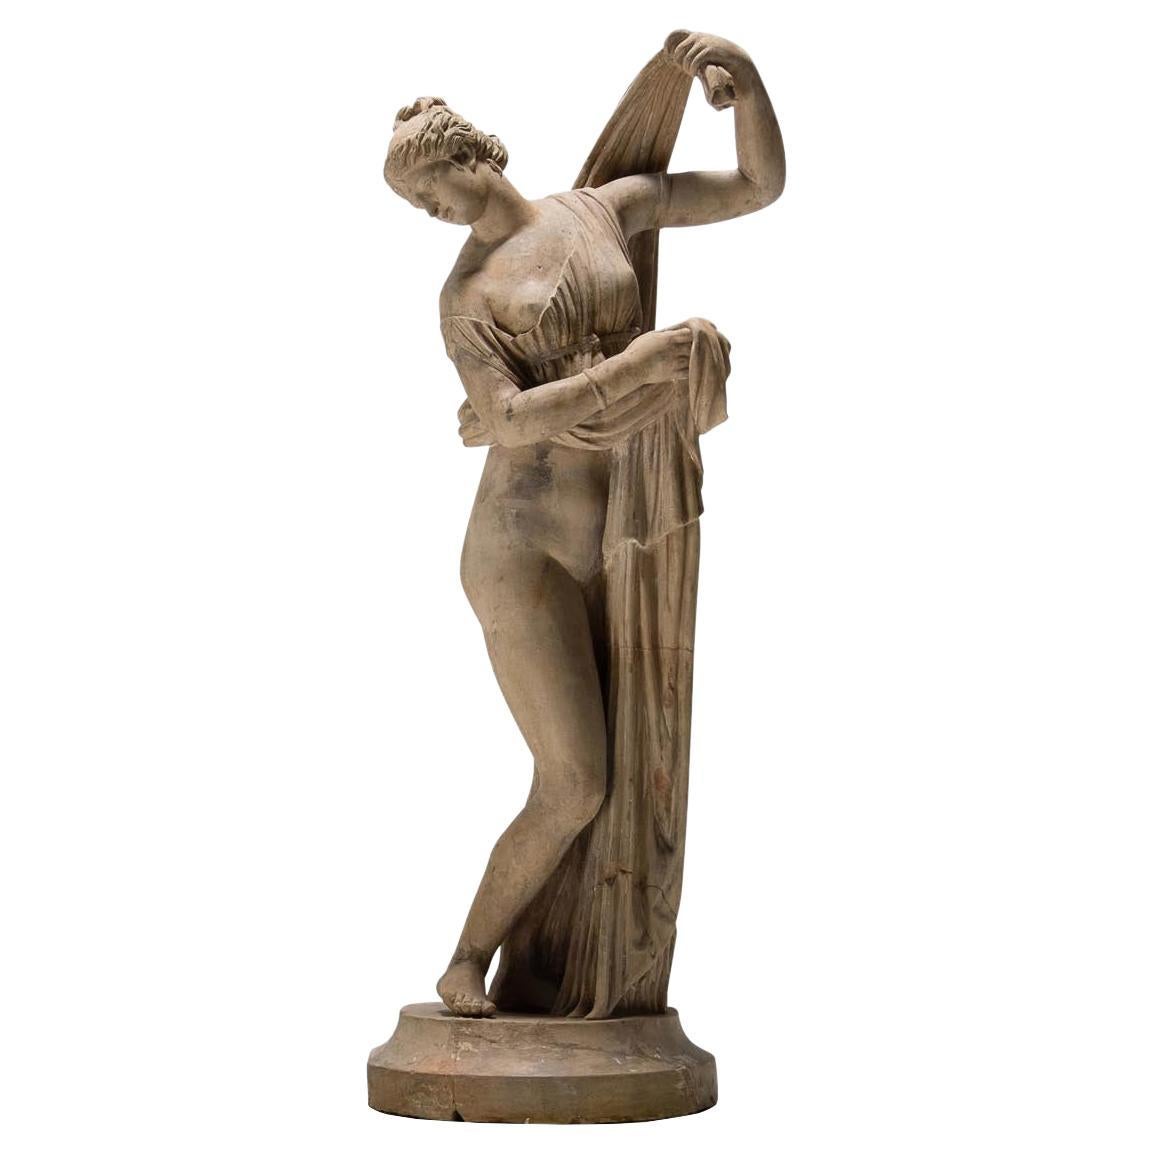 Venus Kallipygos, Venus Callipyge, Aphrodite Kallipygos, ancient